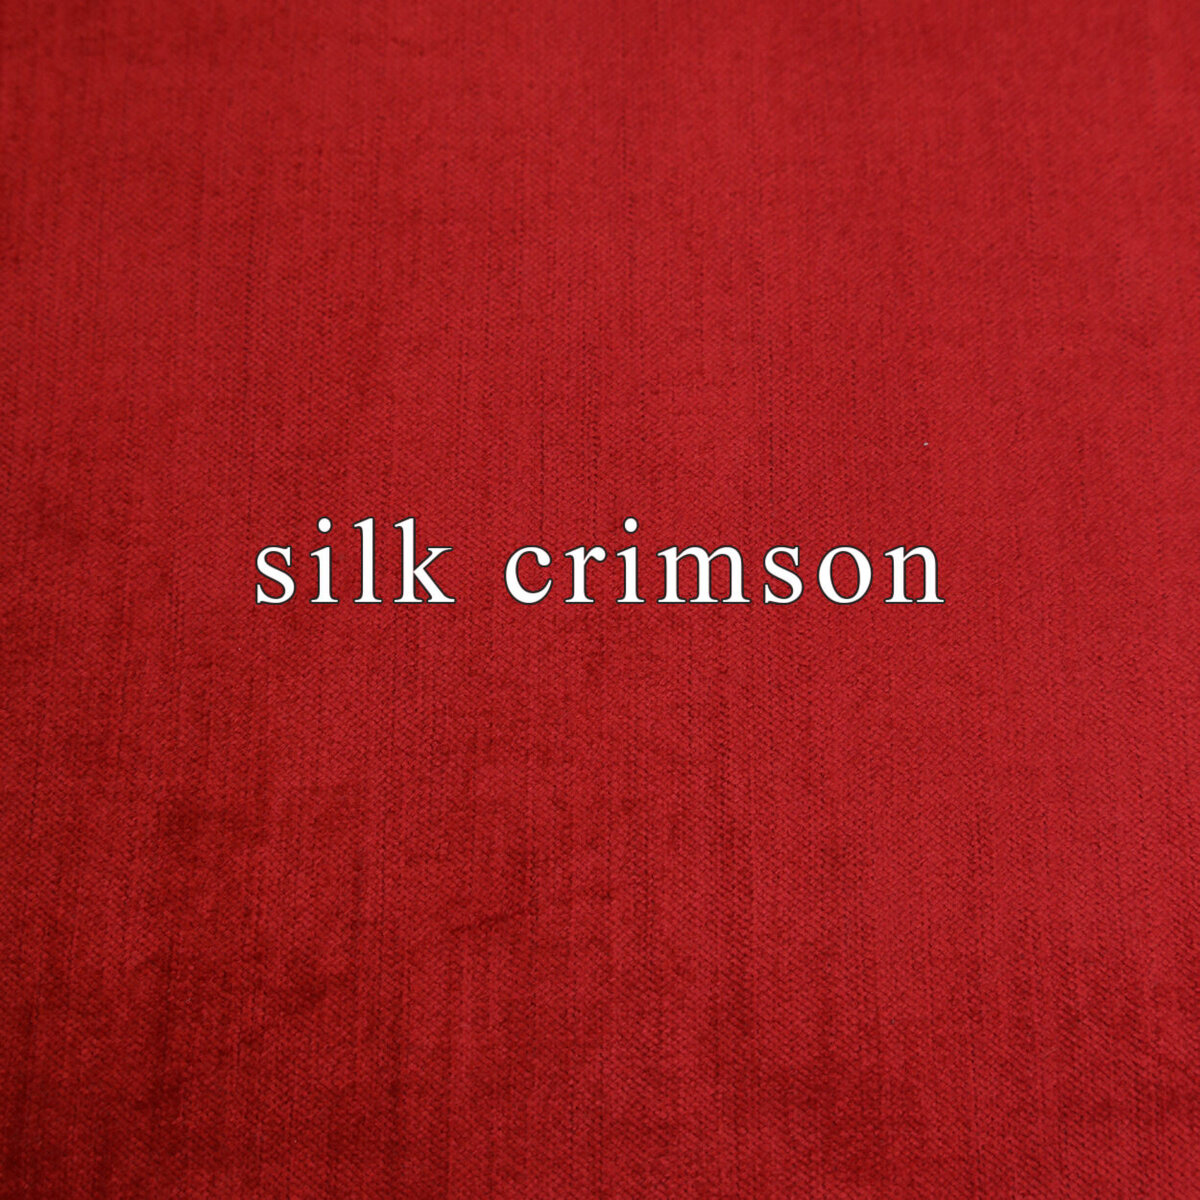 silk-crimson